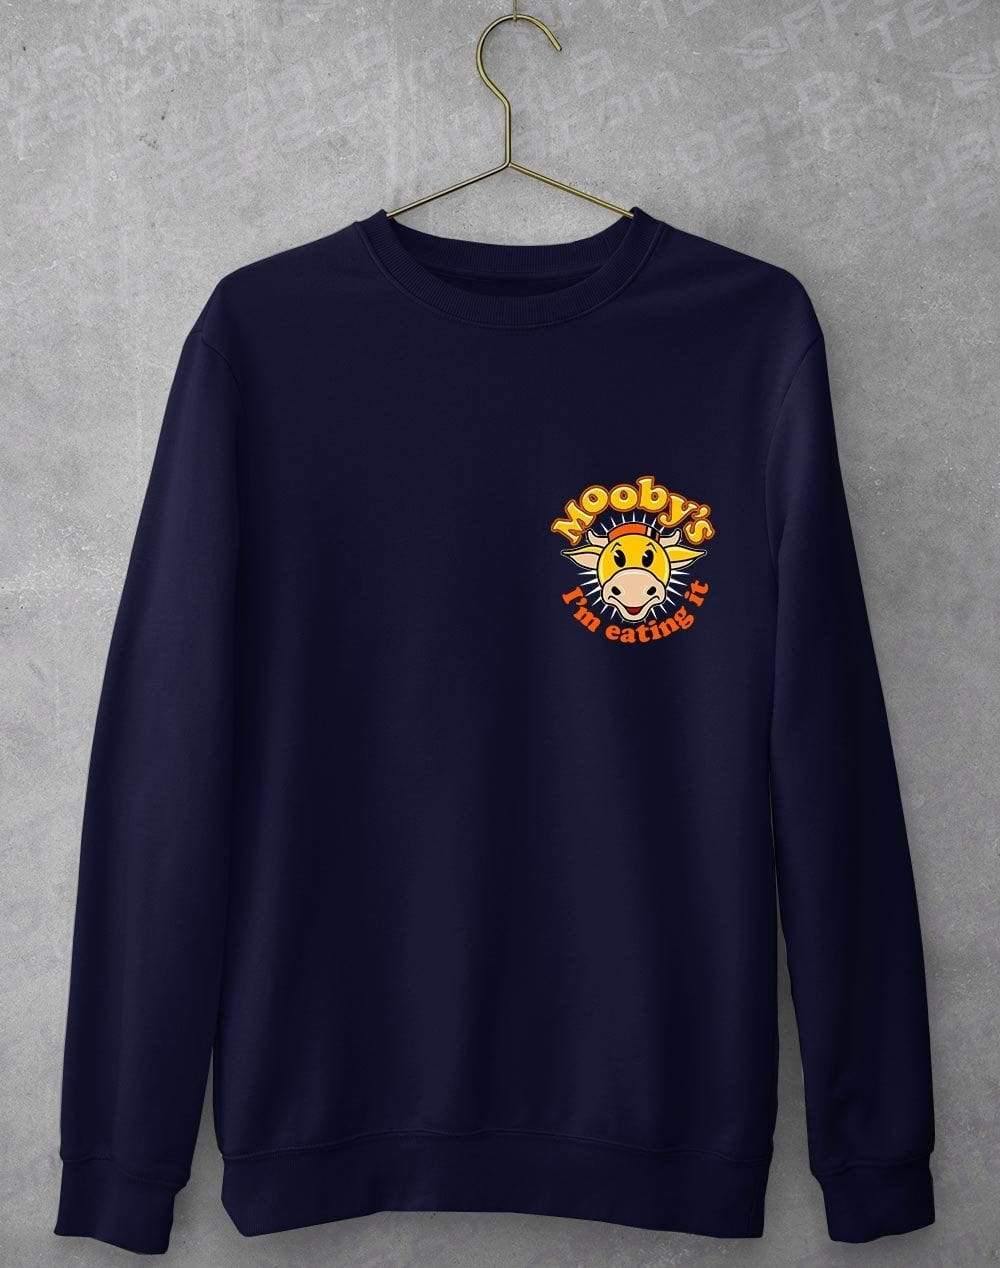 Moobys Sweatshirt S / Navy  - Off World Tees